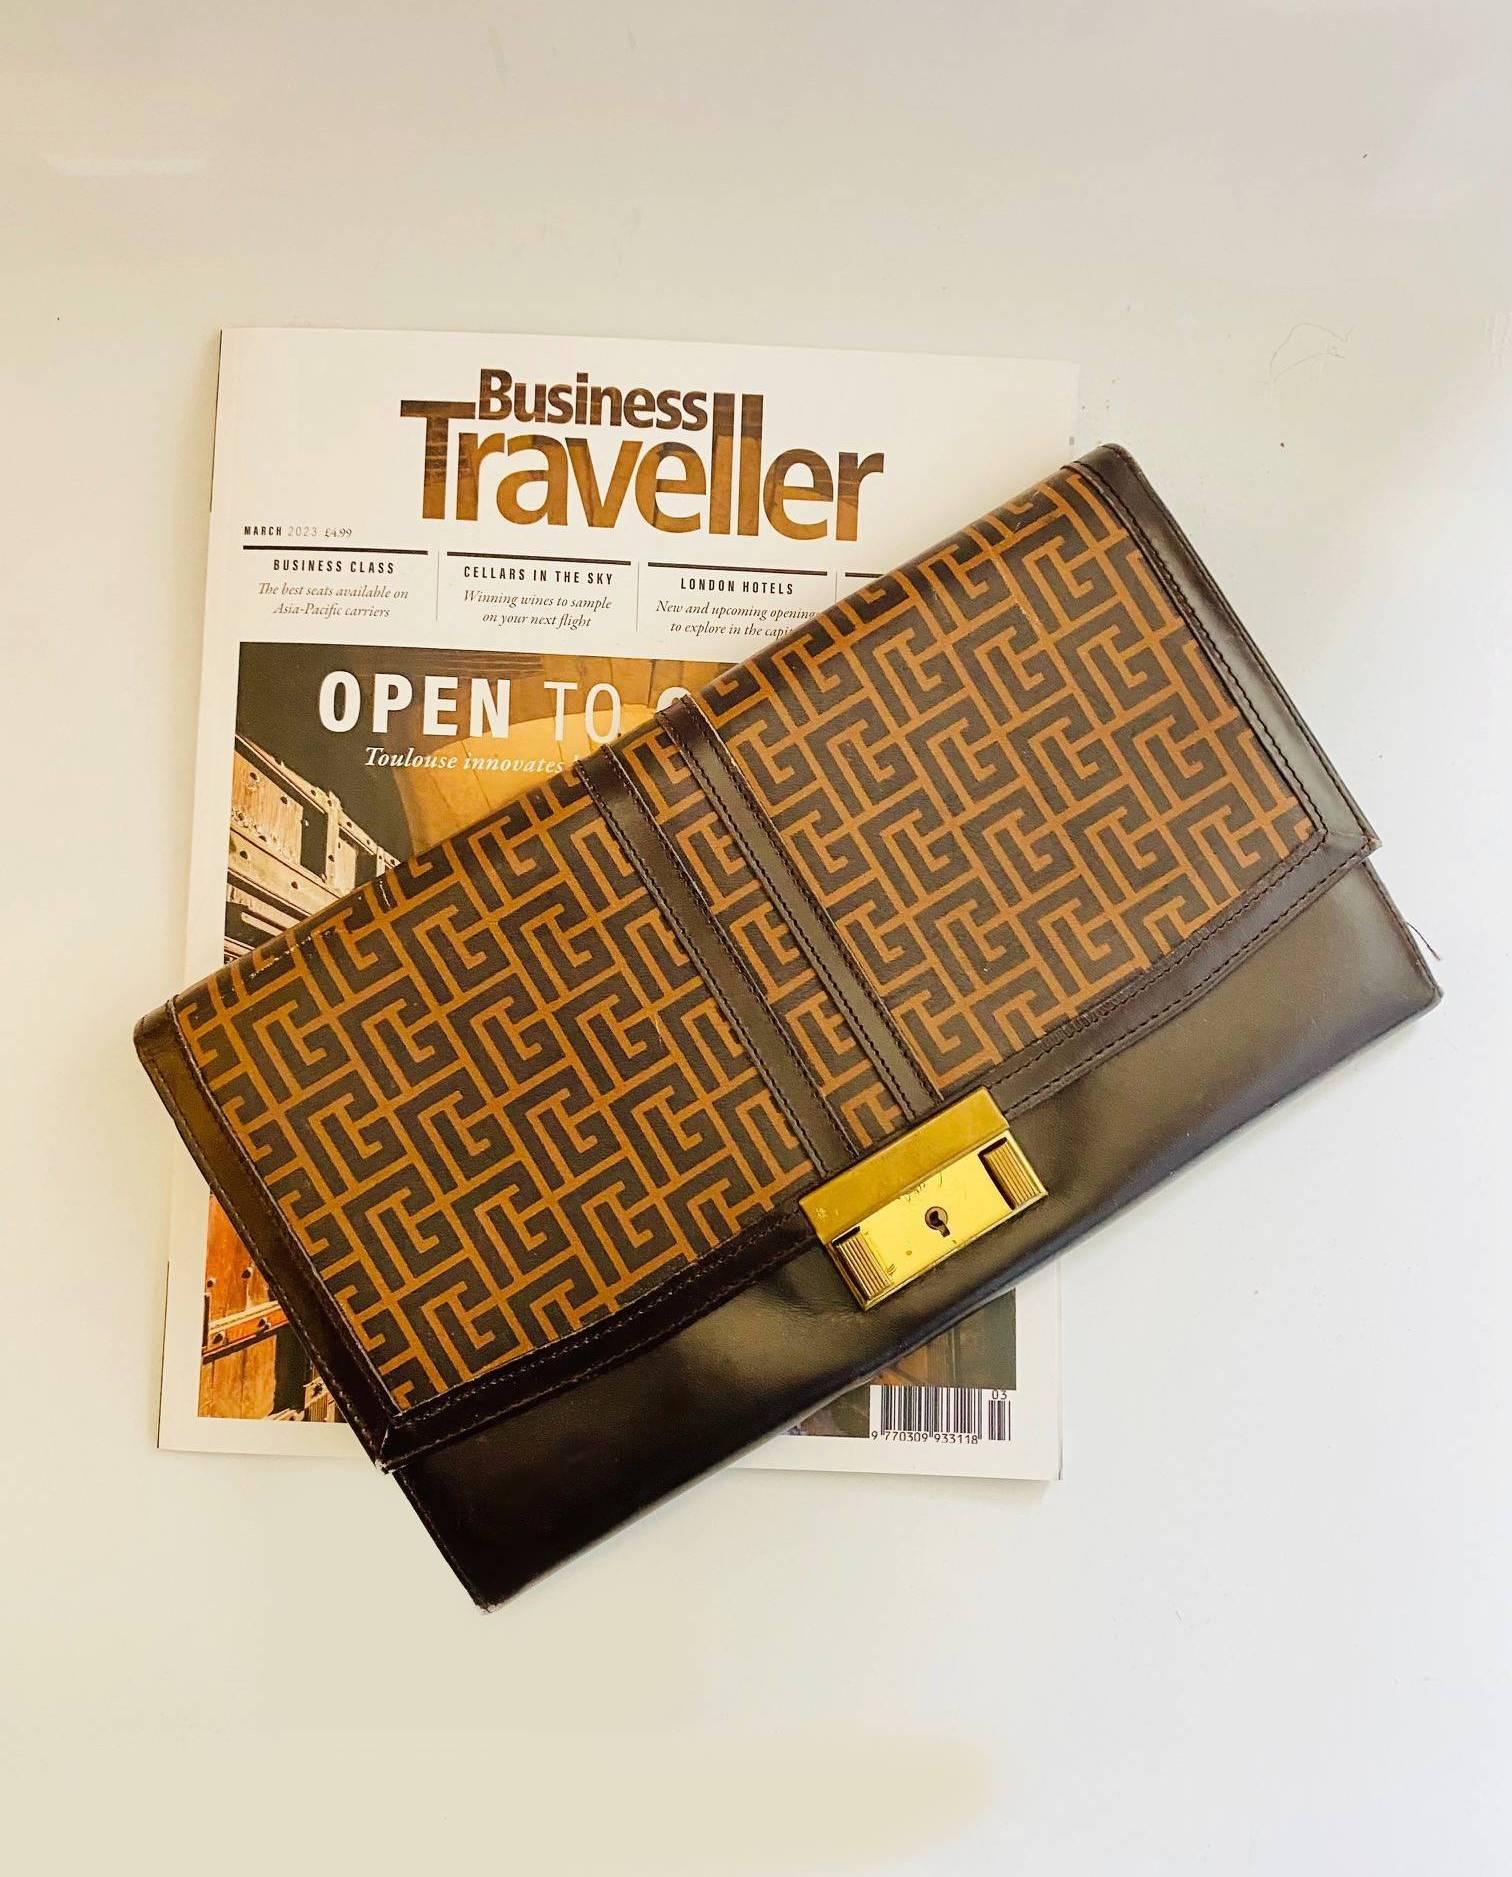 1970er Jahre PIERRE BALMAIN Clutch-Tasche/Reisemappe/Clutch-Tasche mit Fächern für Reisedokumente und Tickets, Verschluss vorne aus goldfarbenem Metall, geometrischer Druck auf braunem Leder, dieses funktionelle Accessoire ergänzt jede Garderobe mit